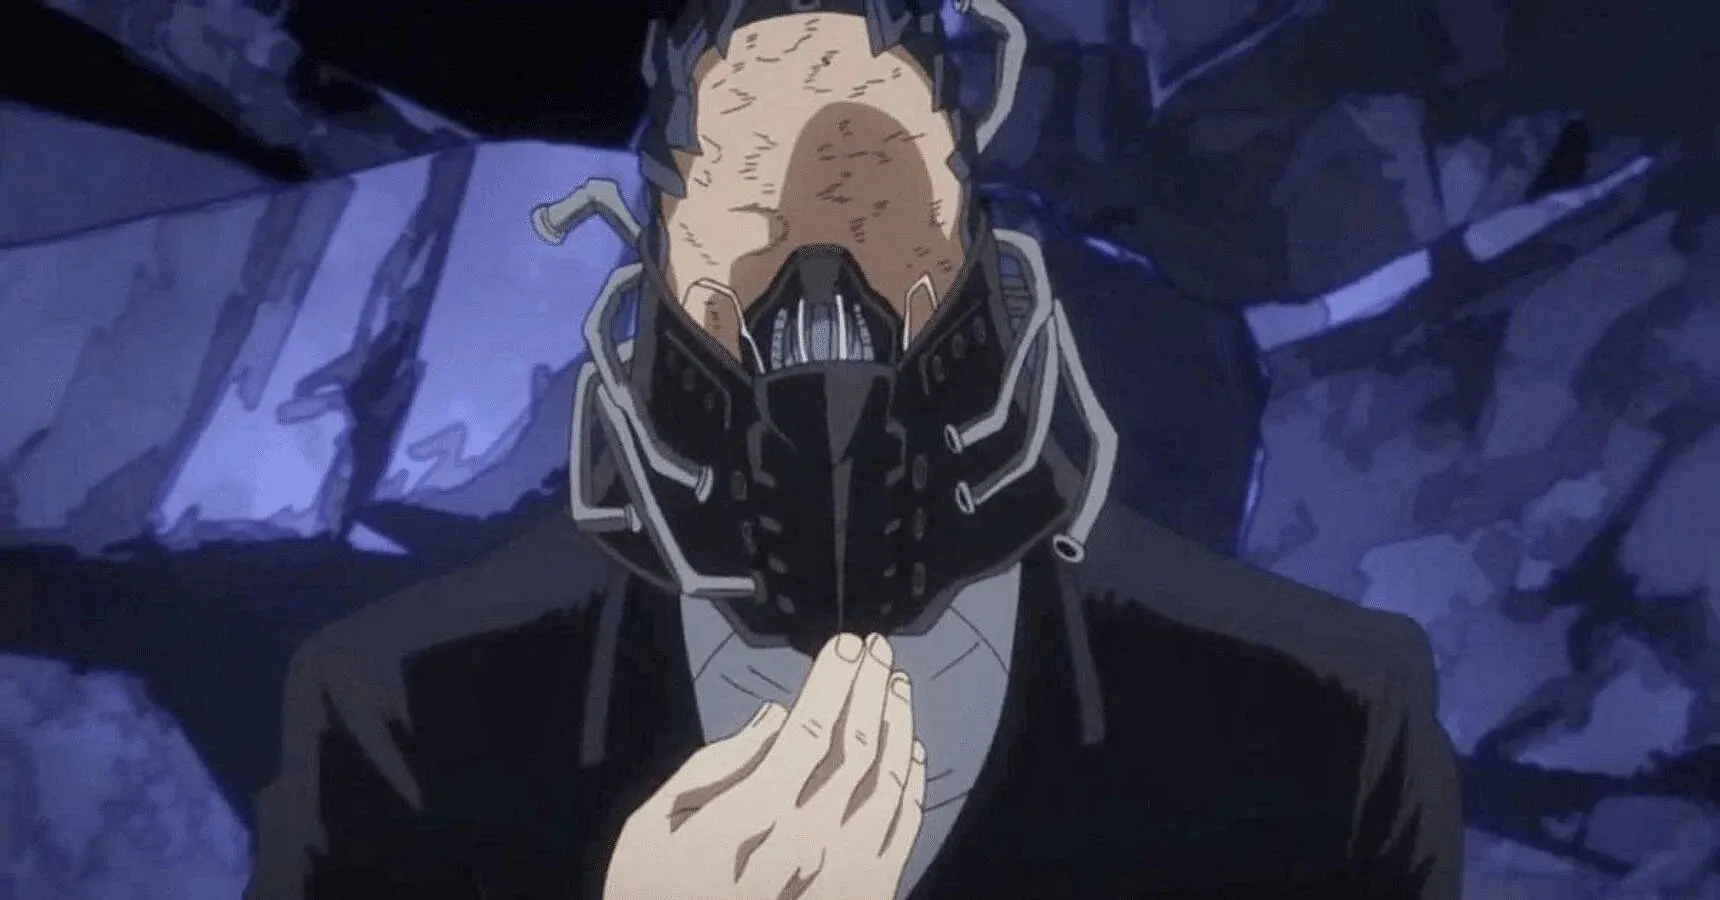 Comenzó bien pero se convirtió en uno de los villanos del anime más odiados (Imagen vía Bones).